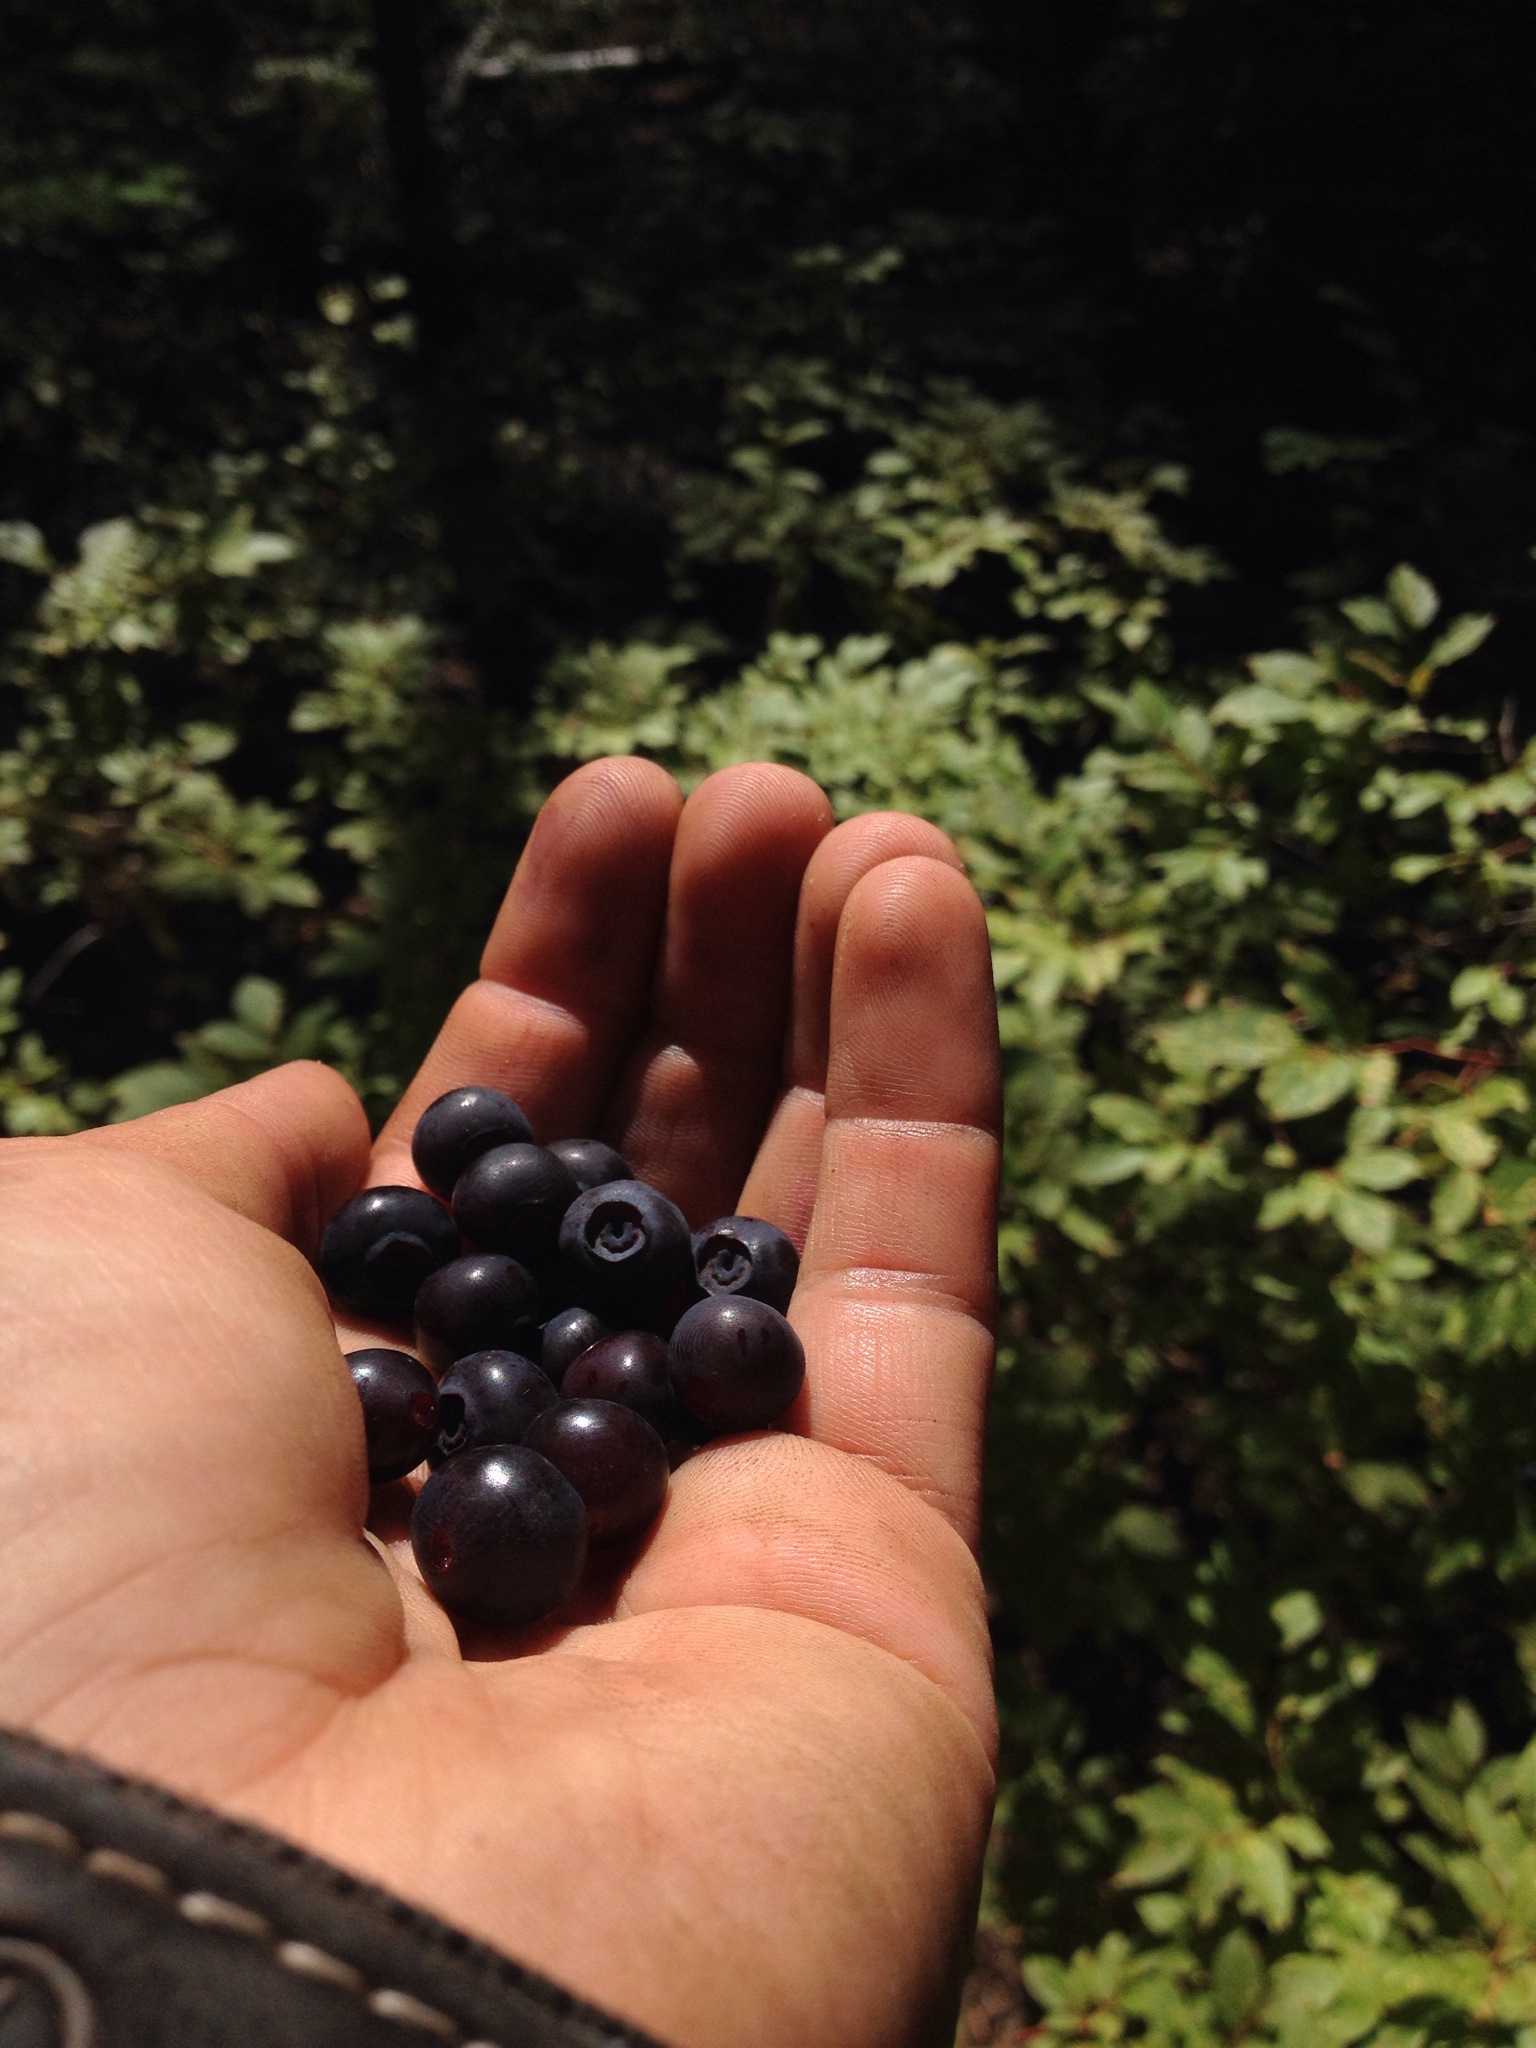 A handful of huckleberries.